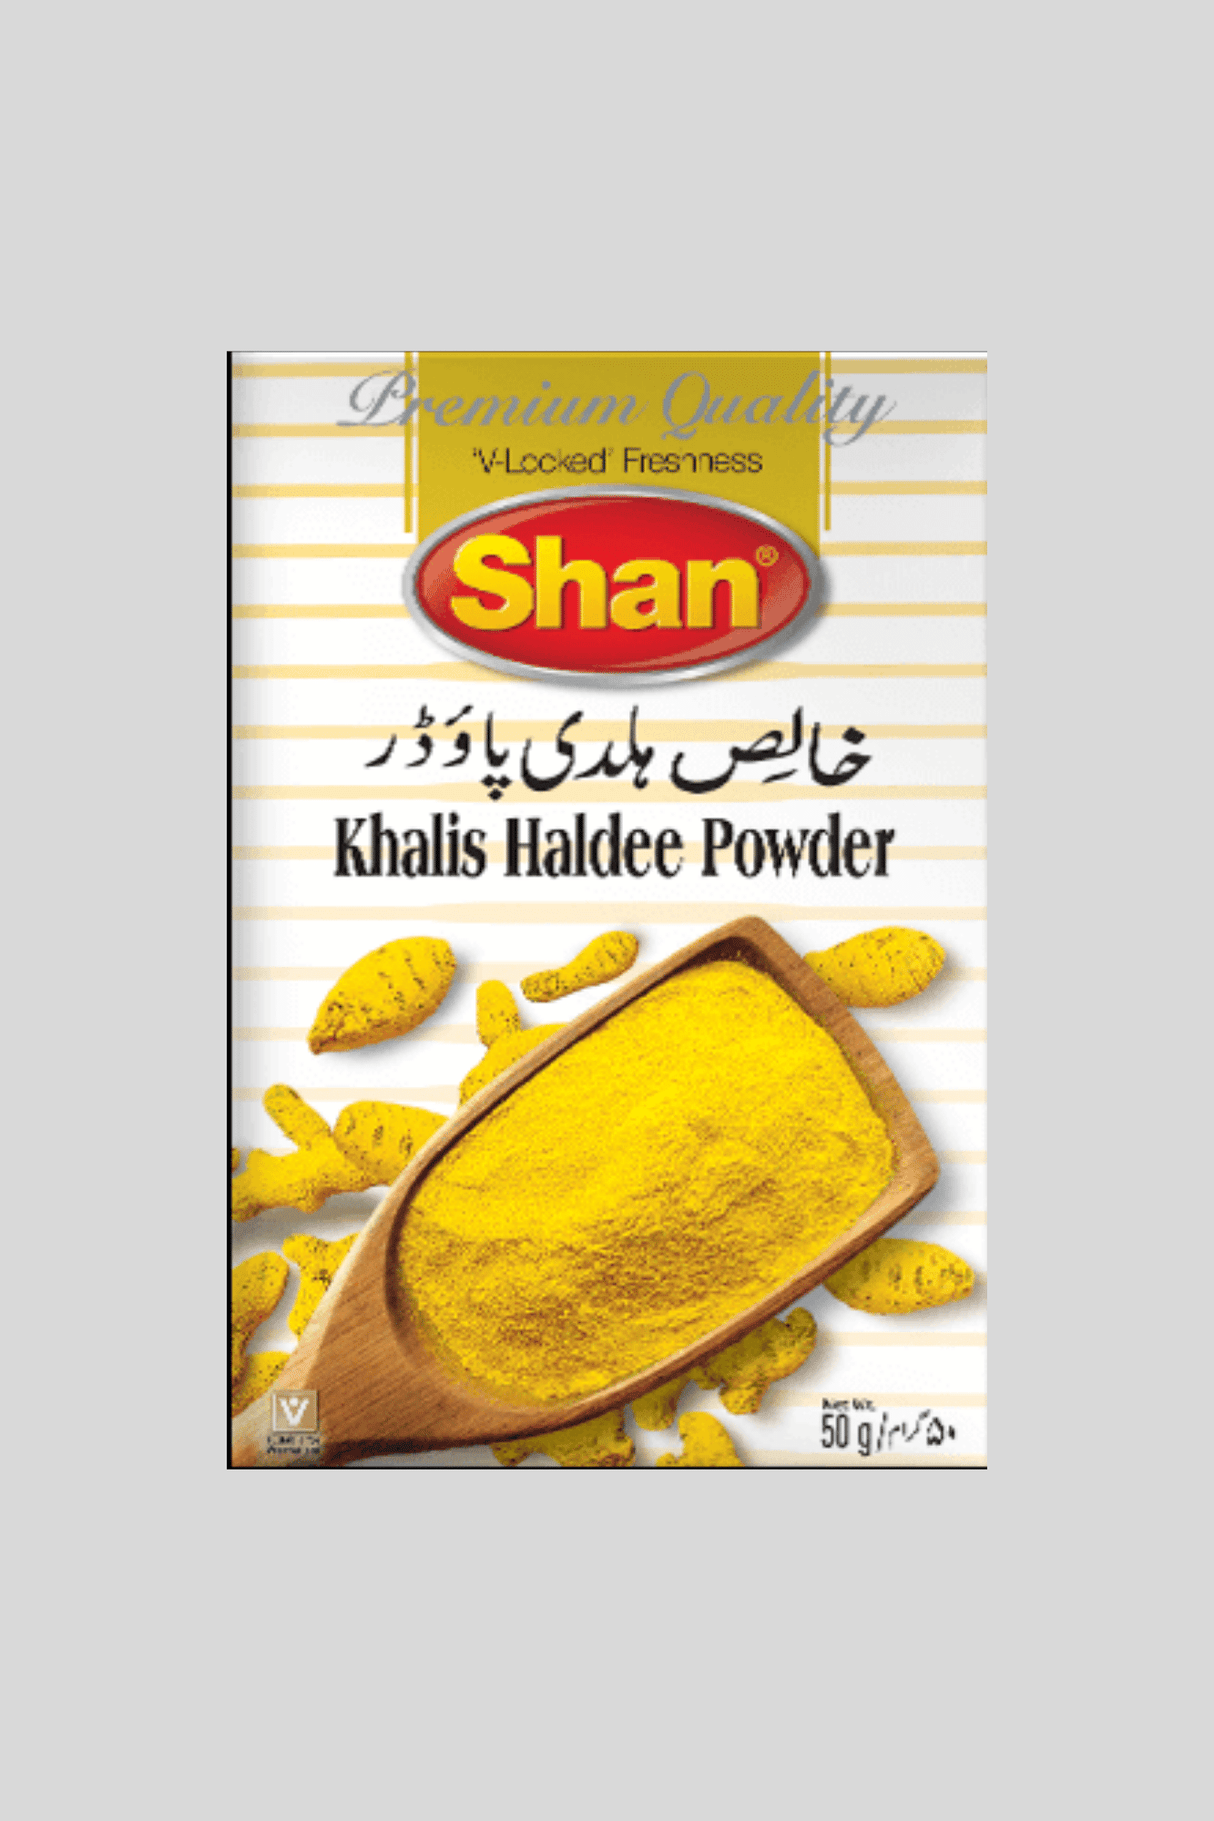 shan haldee powder 50g